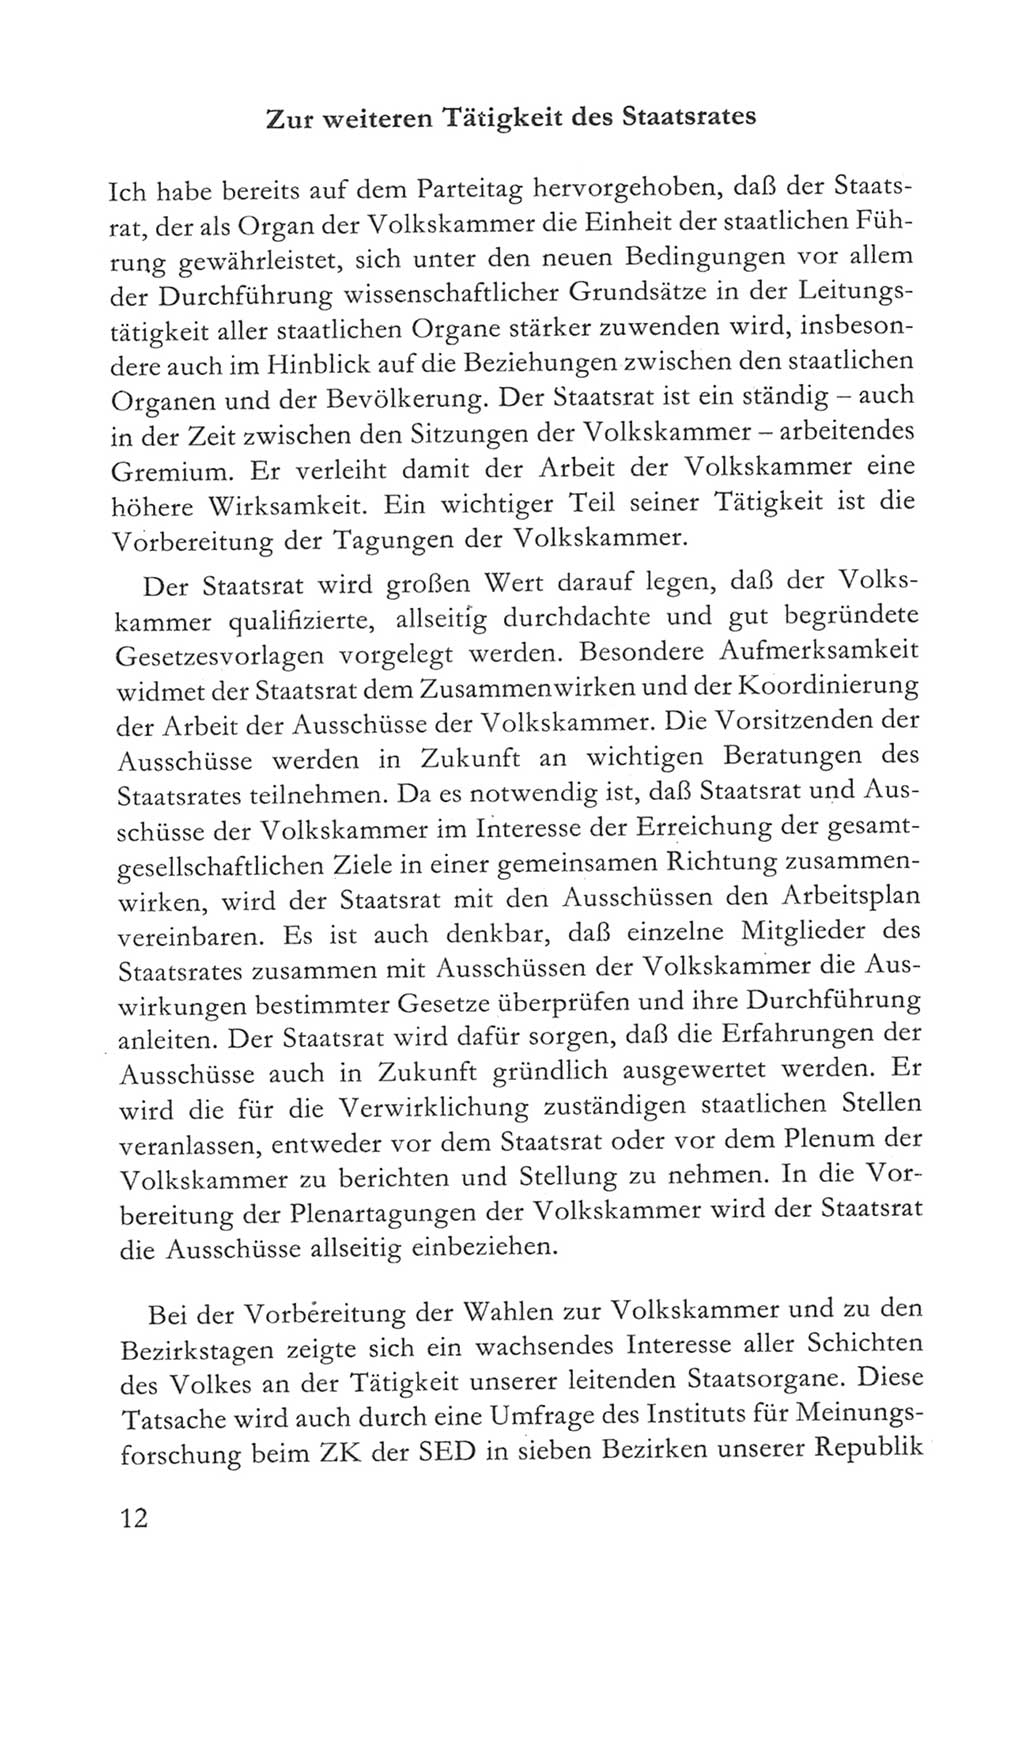 Volkskammer (VK) der Deutschen Demokratischen Republik (DDR) 5. Wahlperiode 1967-1971, Seite 12 (VK. DDR 5. WP. 1967-1971, S. 12)